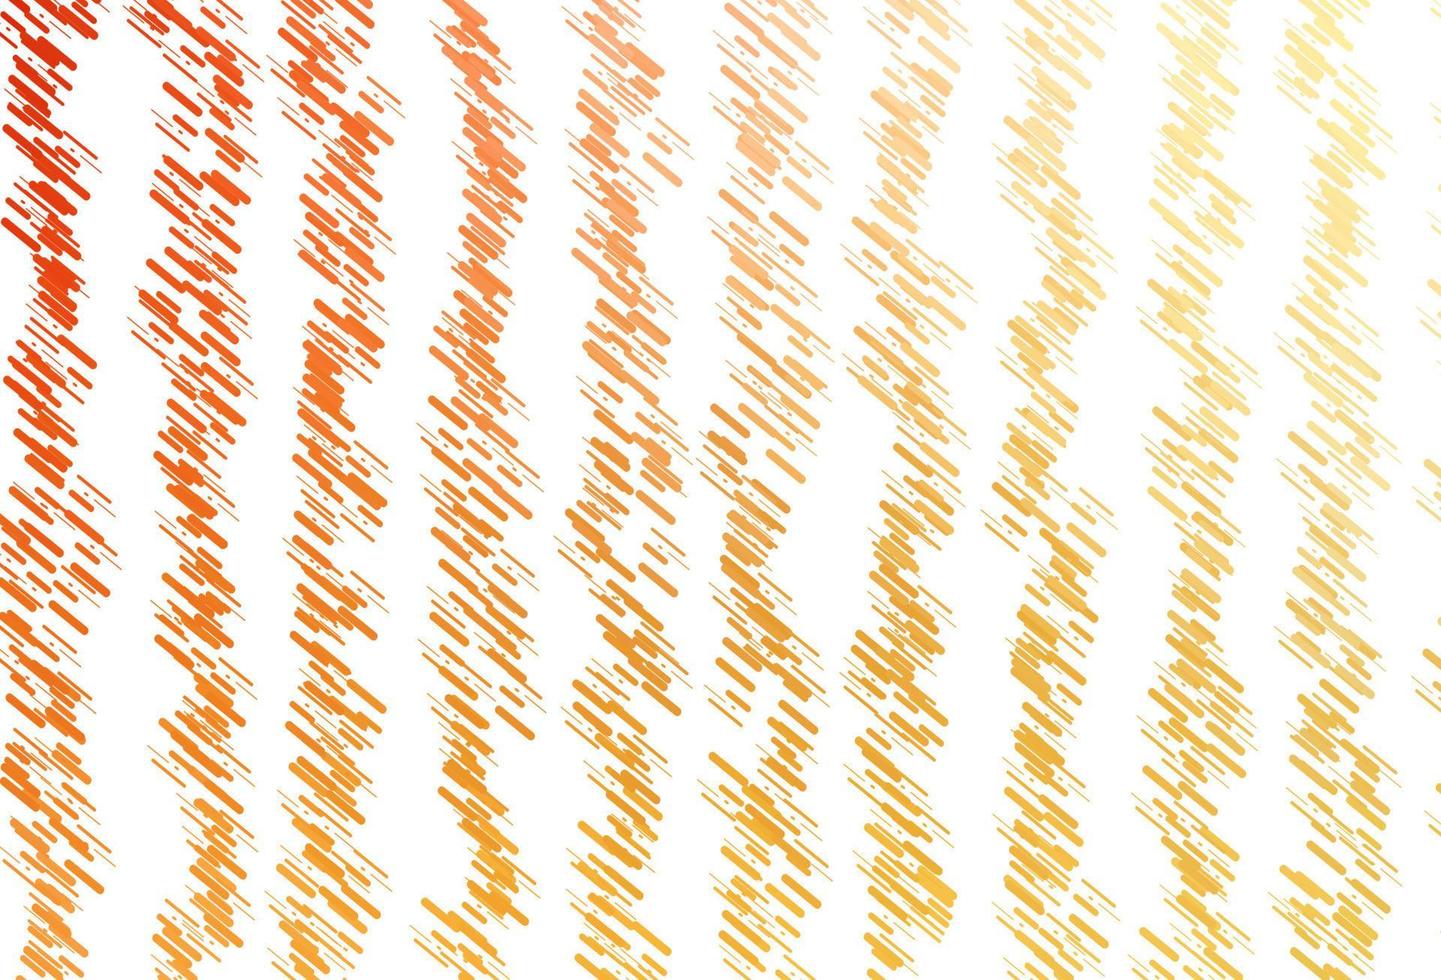 sfondo vettoriale giallo chiaro, arancione con linee rette.